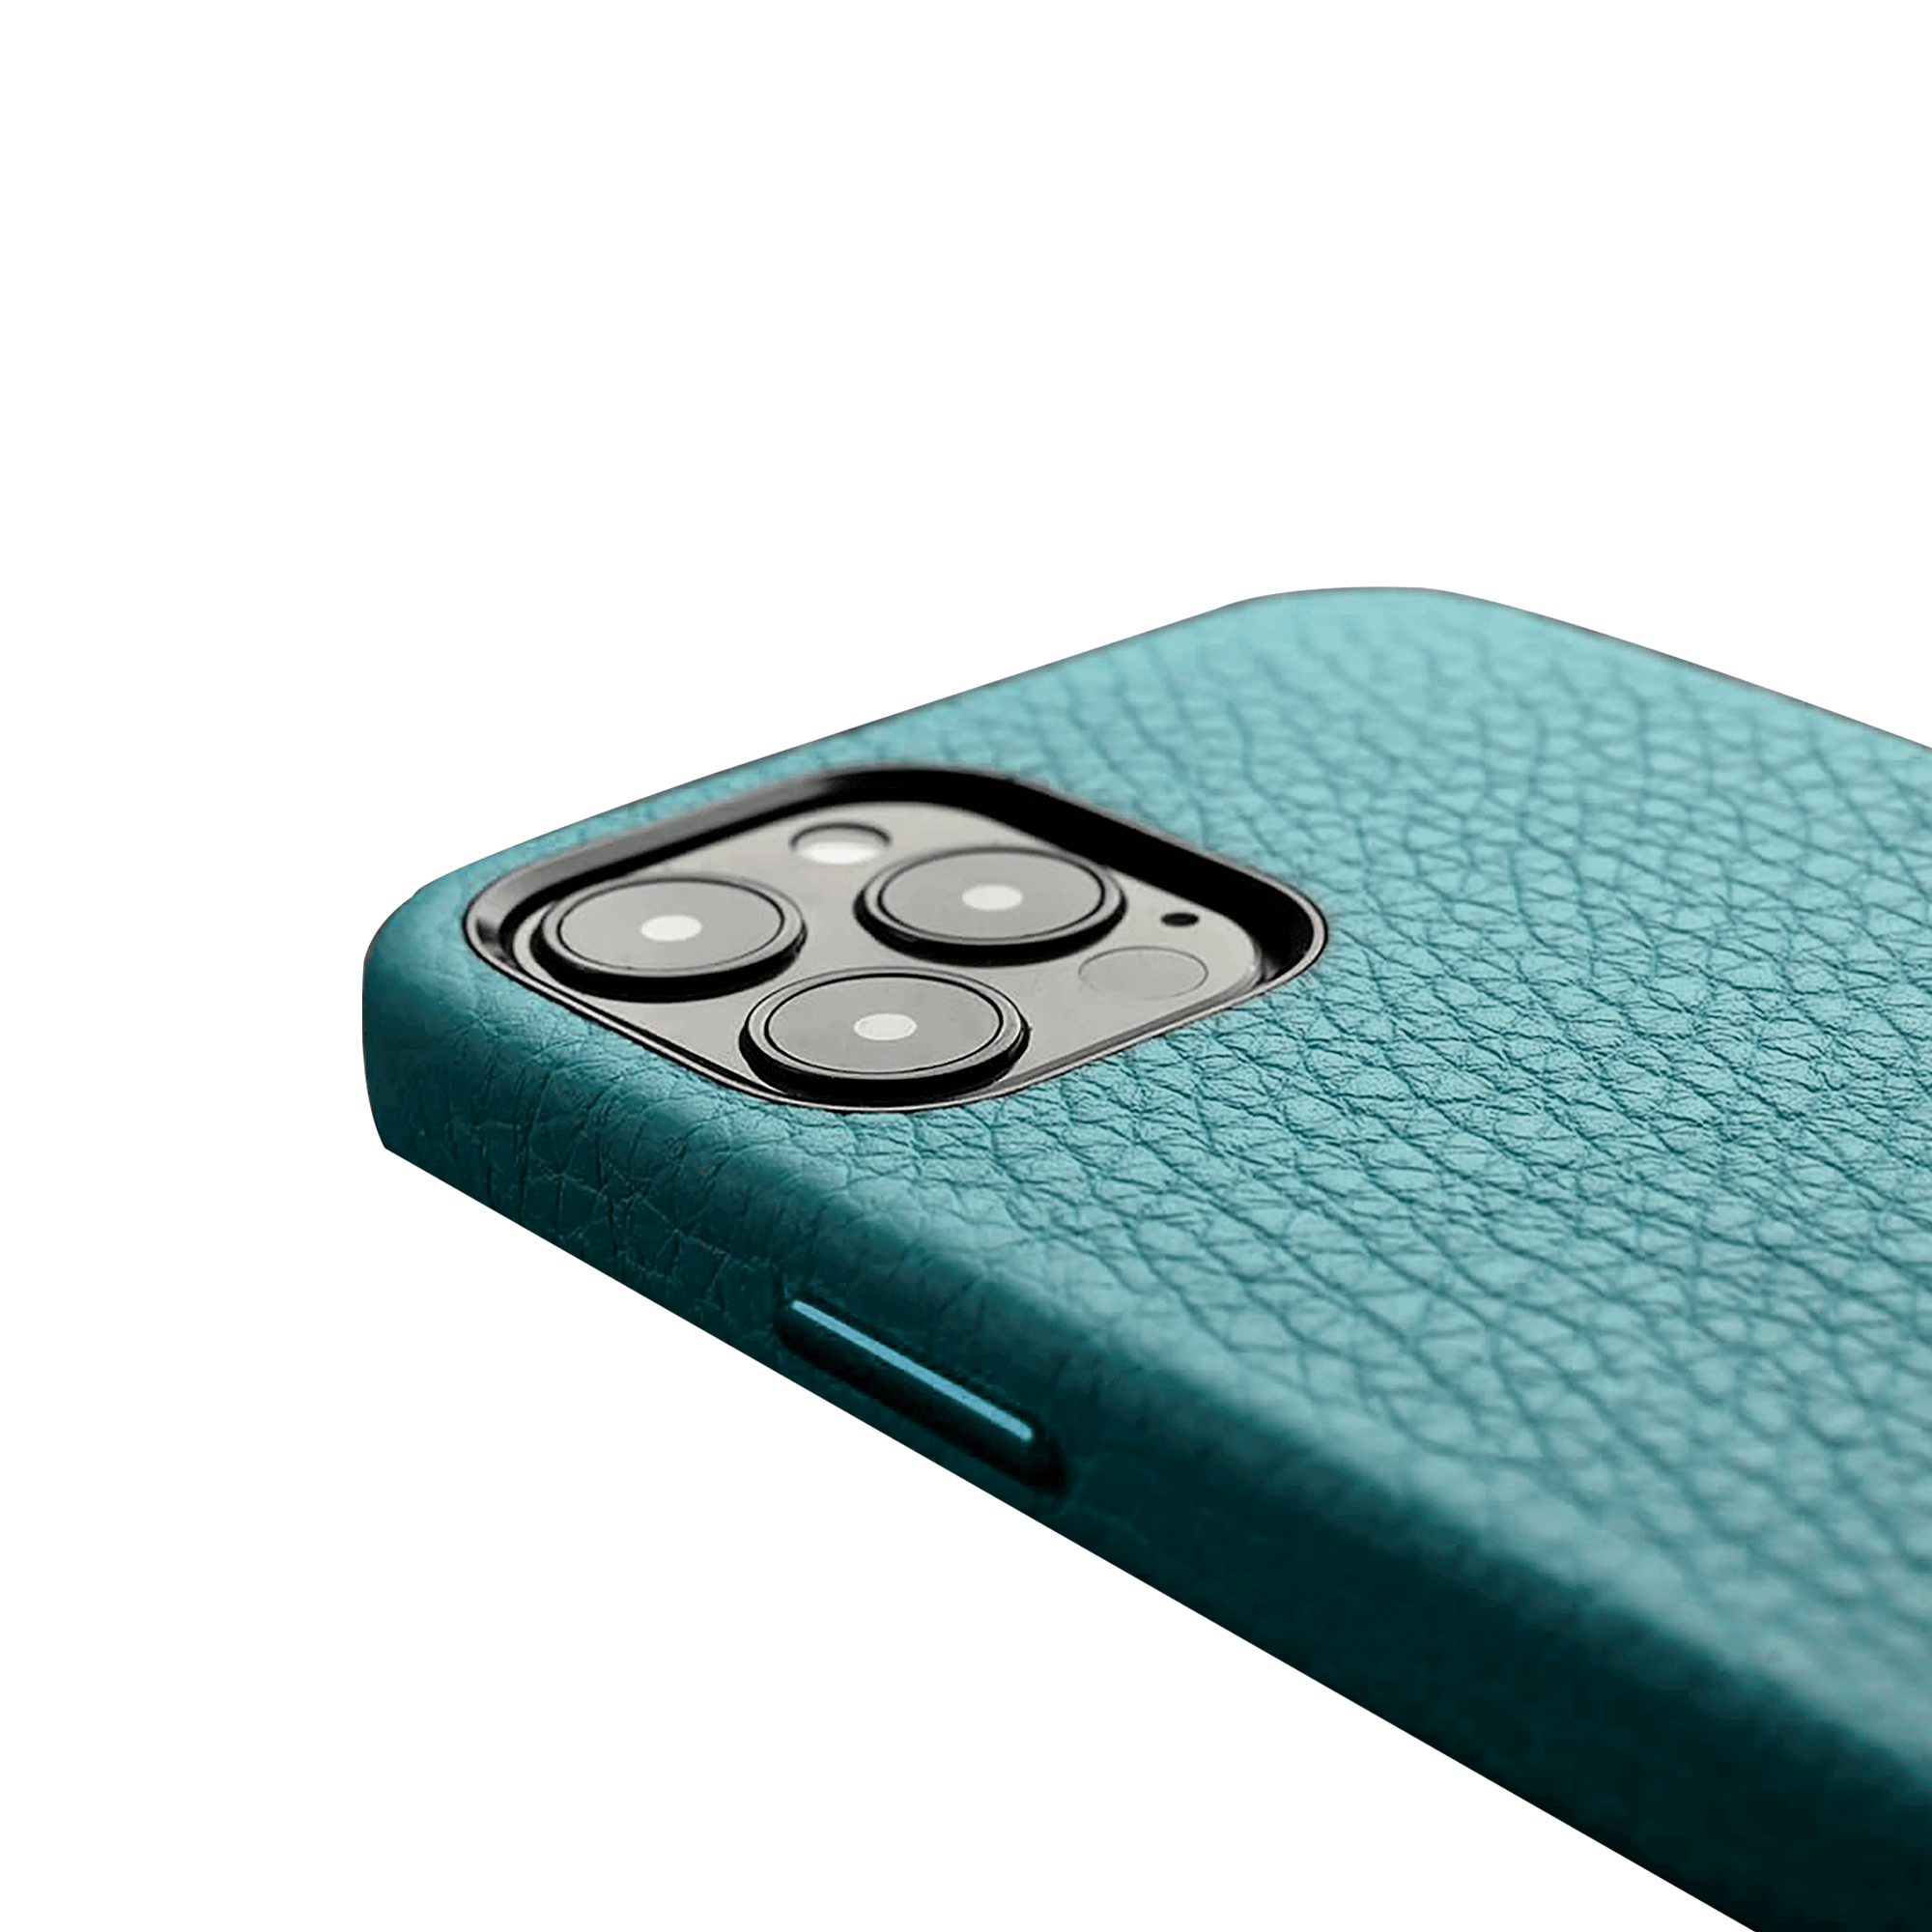 Melkco Origin Paris Premium Leather Cover For Apple iPhone 12 / 12 Pro - Lake Blue